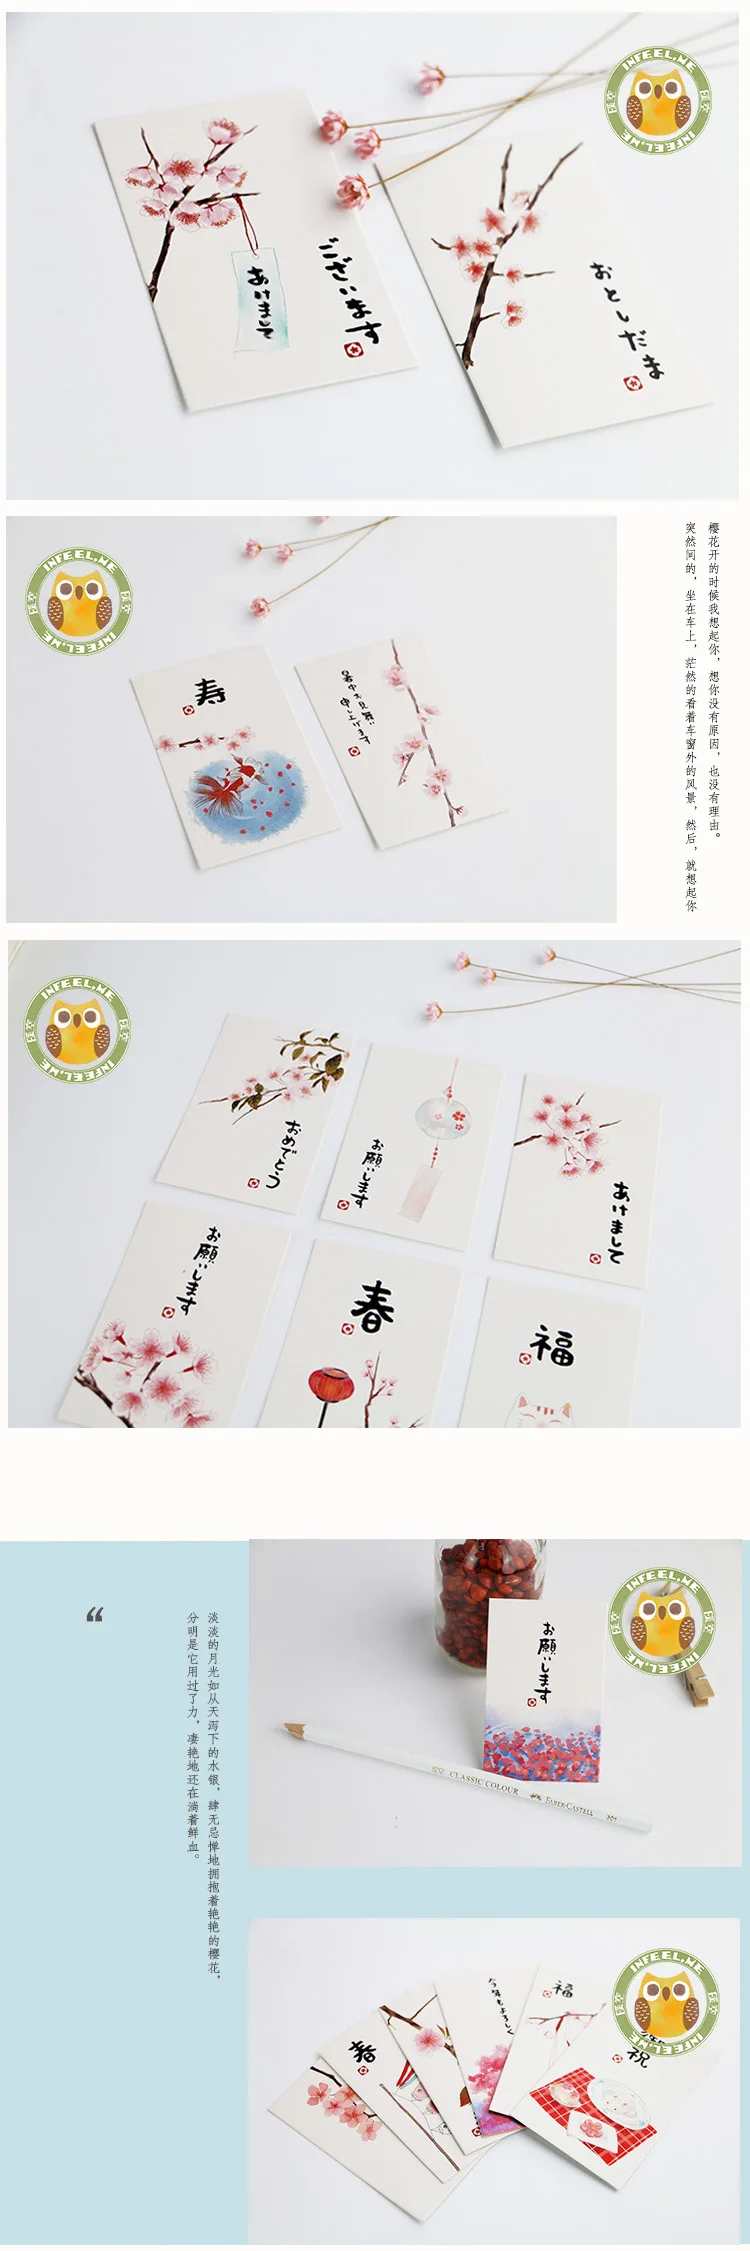 Сакура lomo карта японский стиль маленький подарок карта милый закладки заметки сообщение мини открытка высокое качество 28 карт/серия